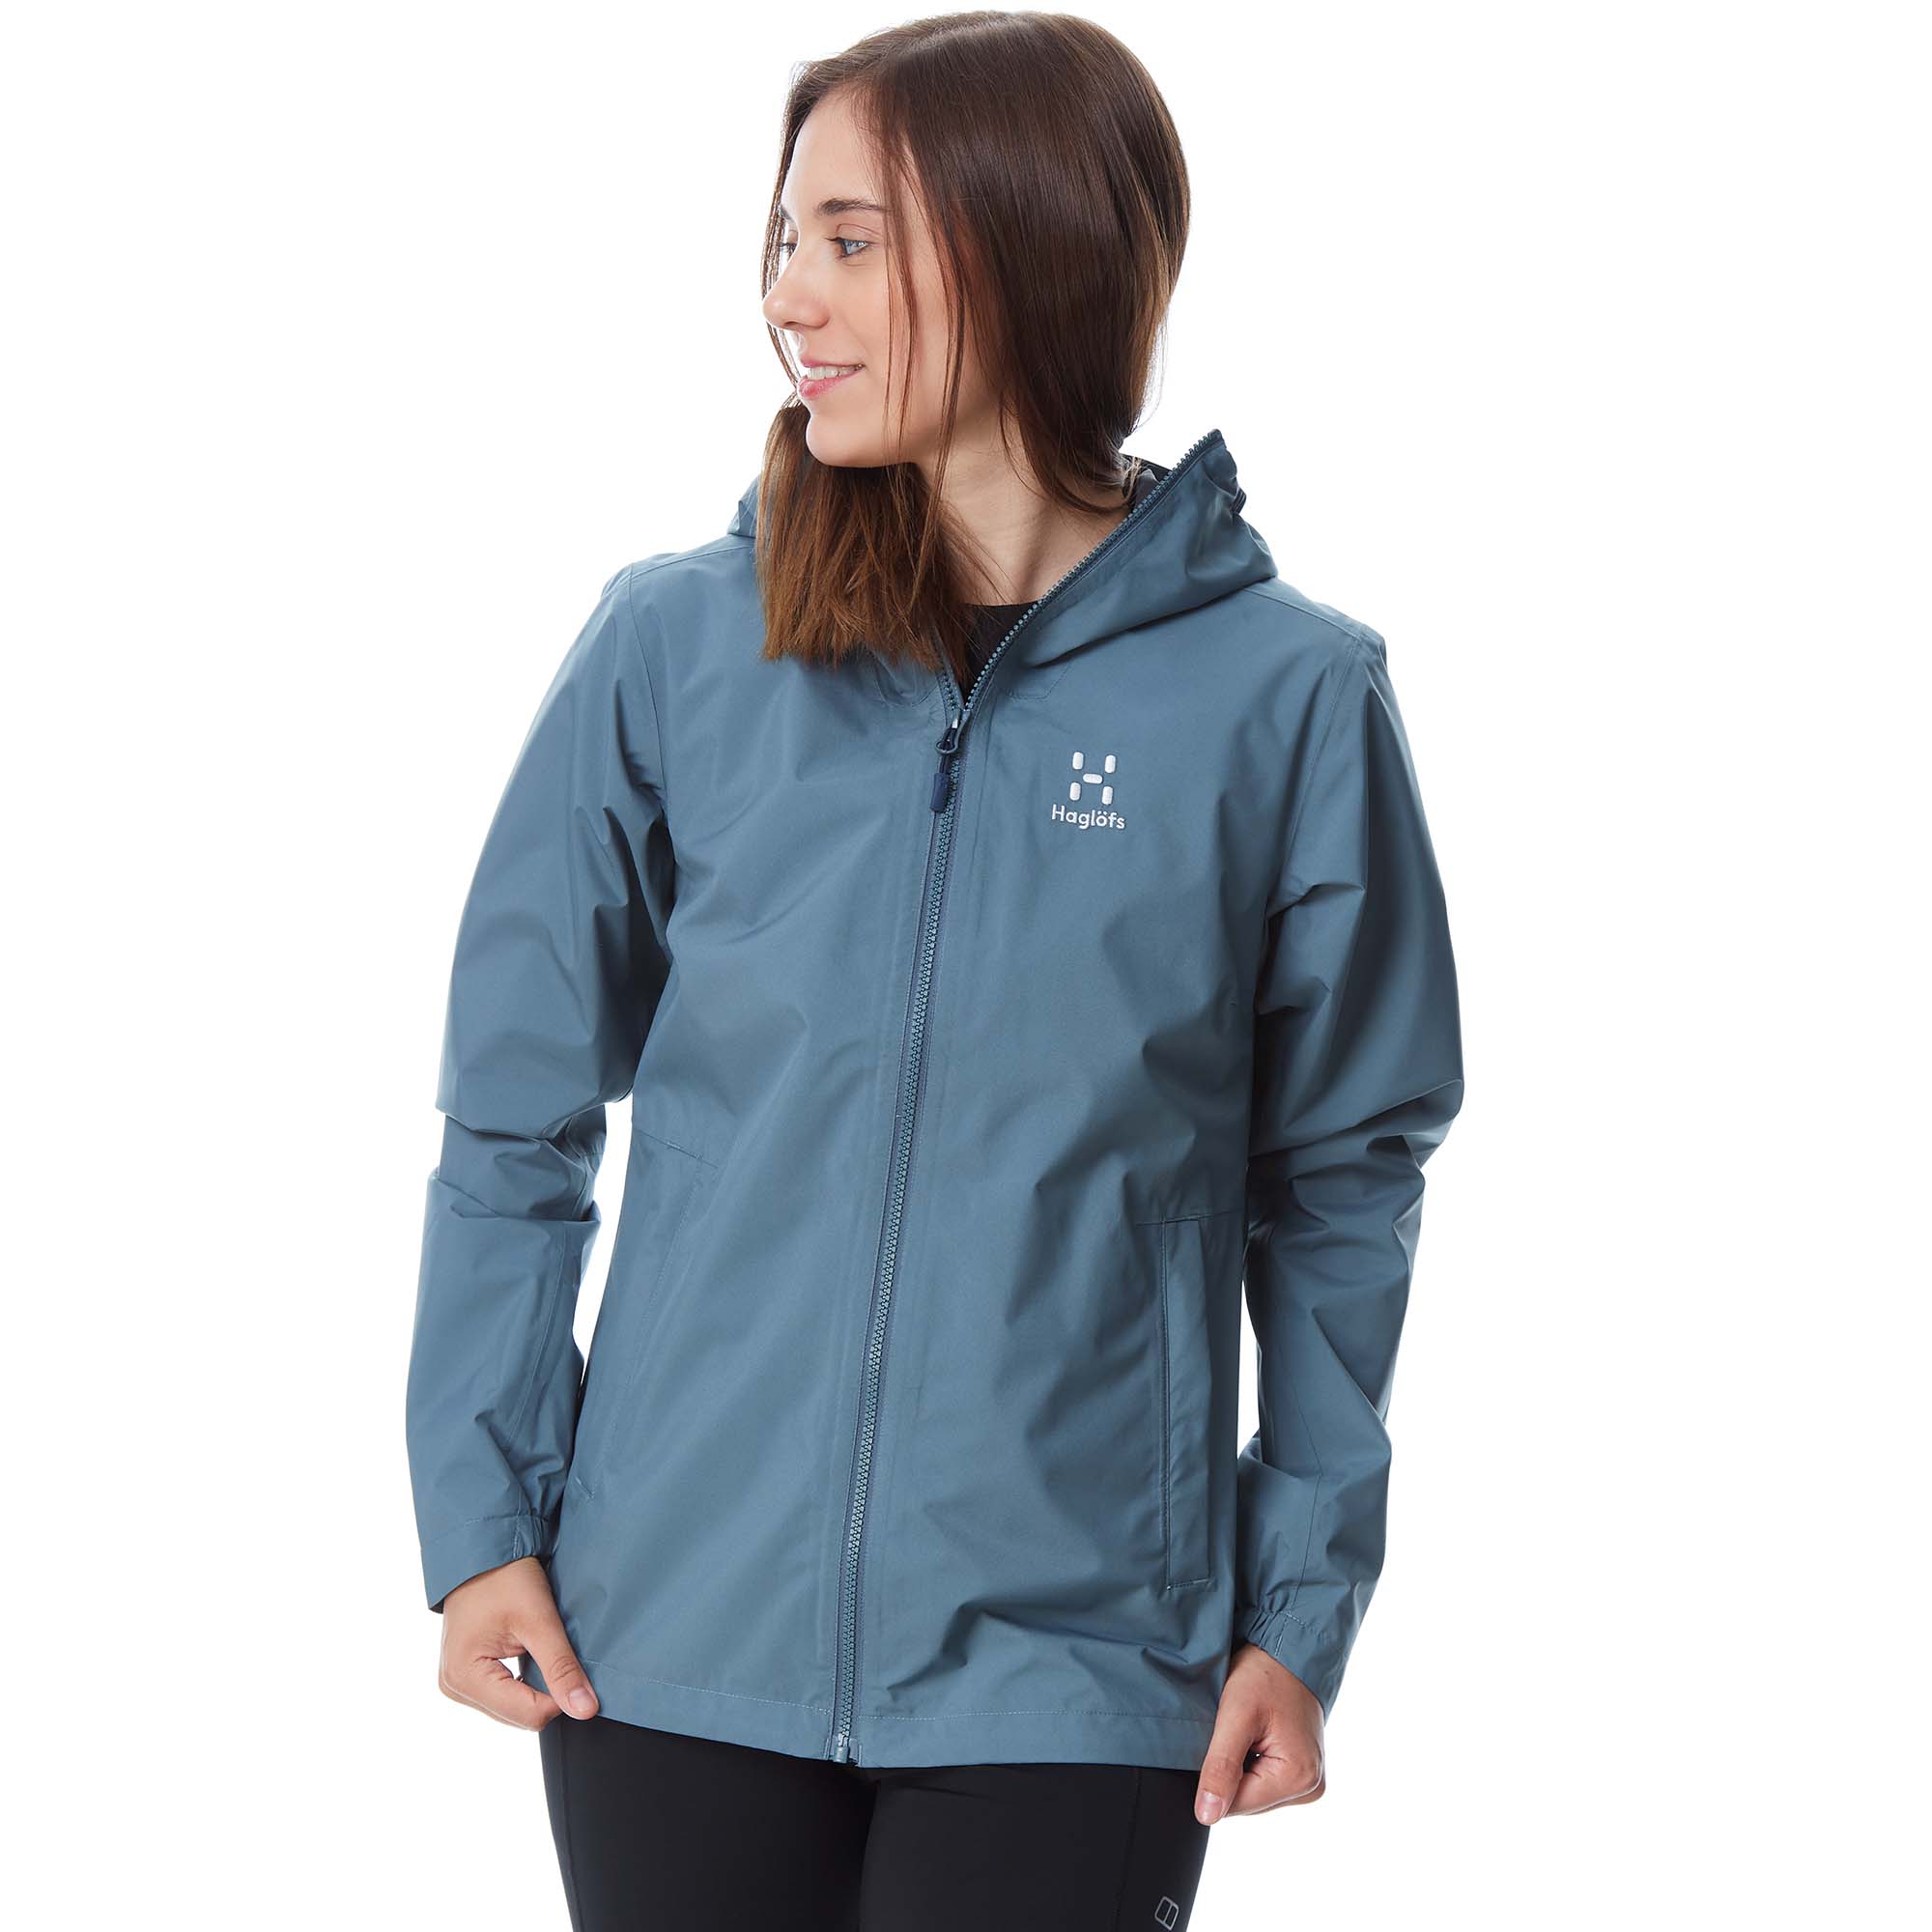 Haglofs Korp Proof Women's Waterproof Jacket